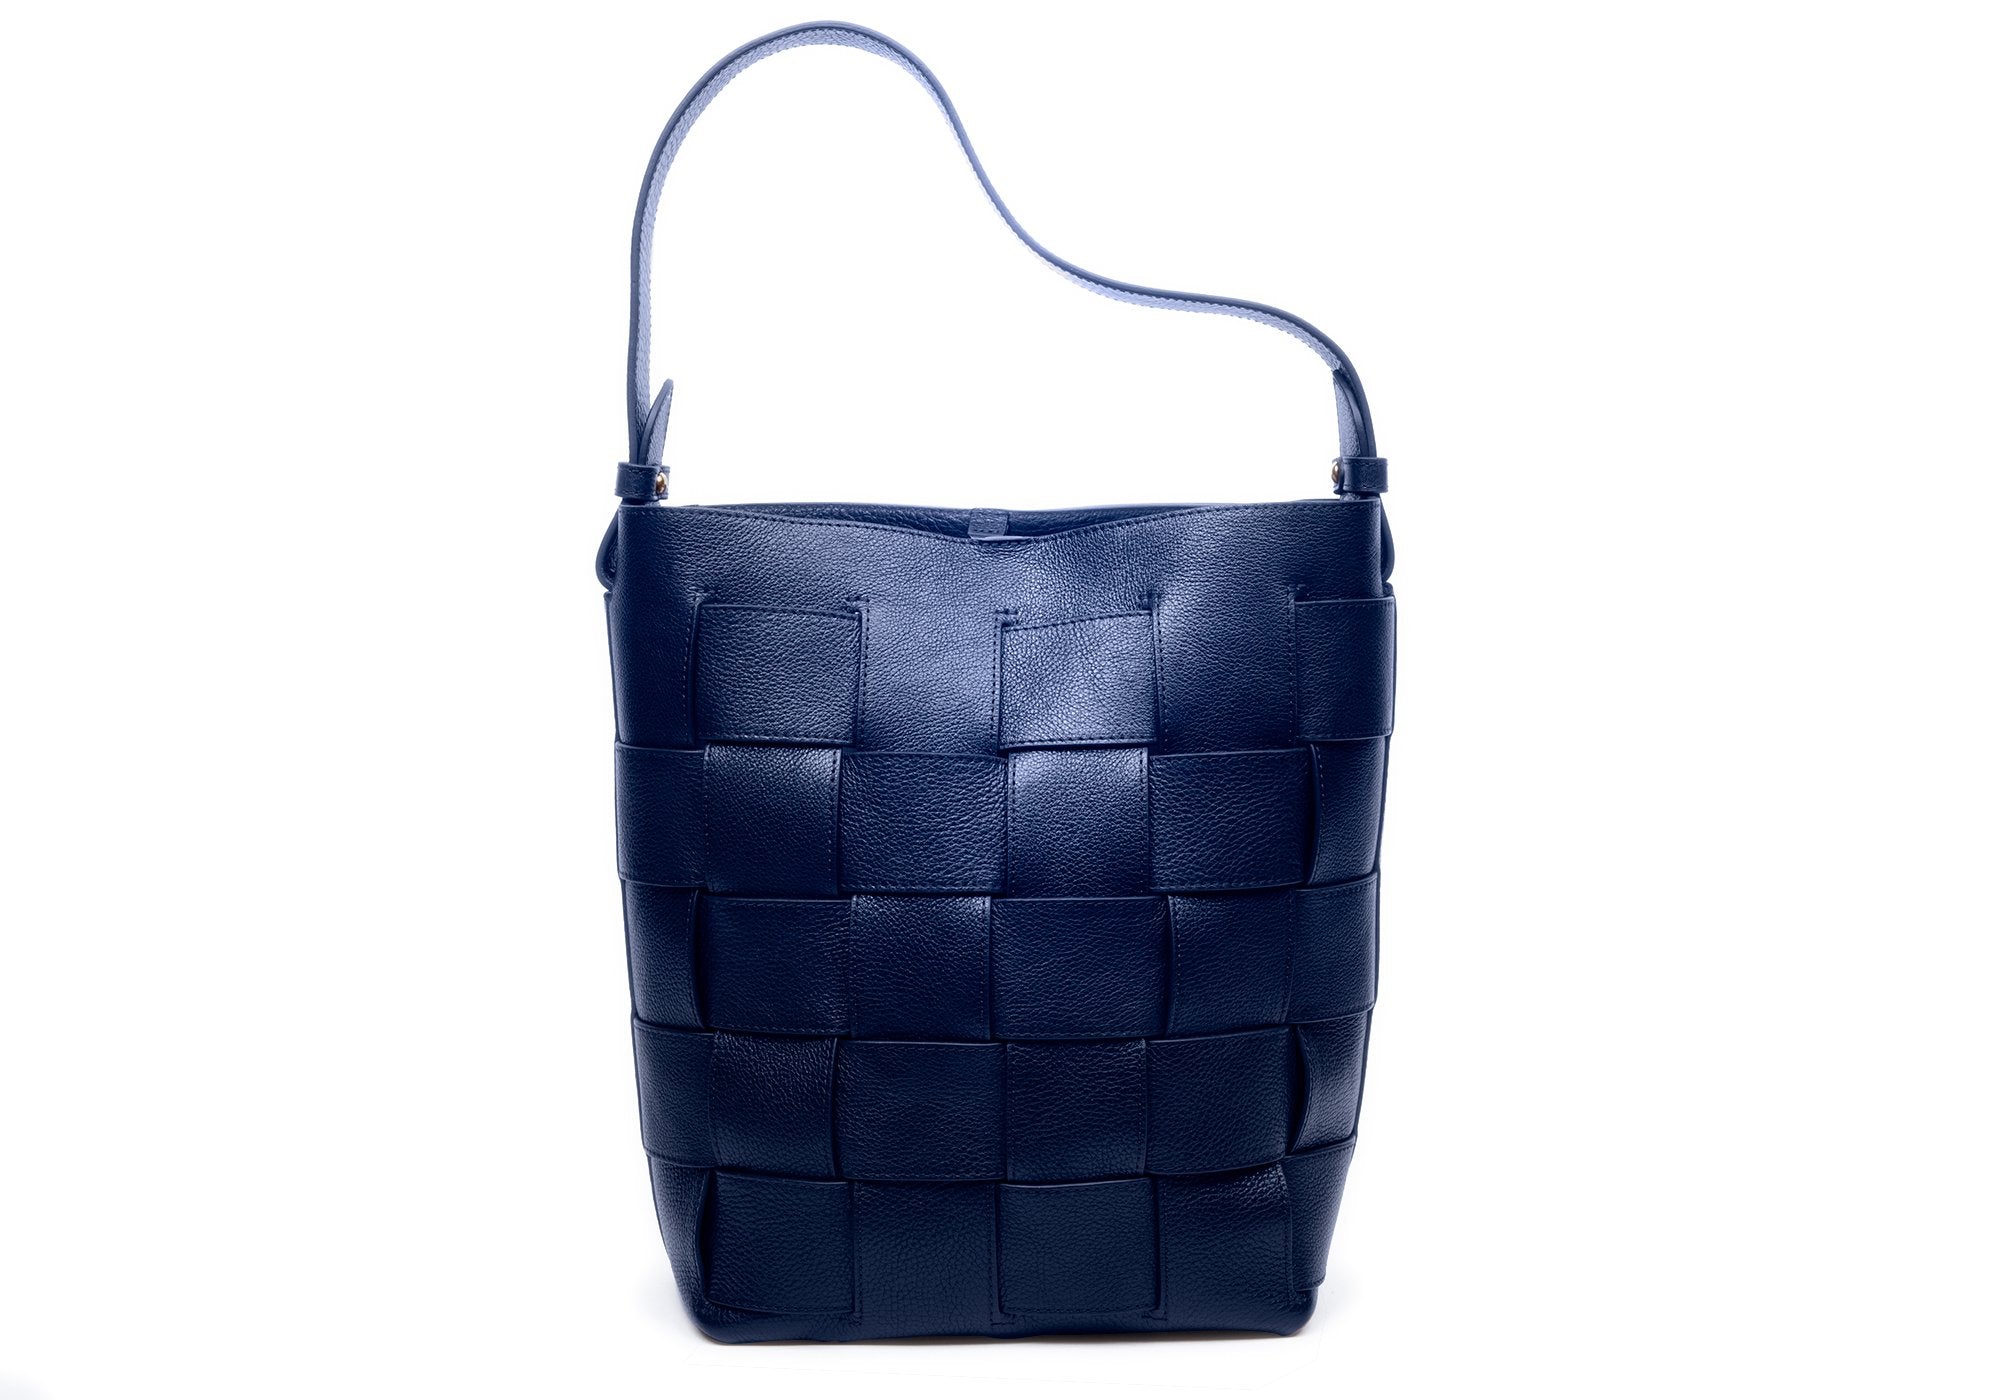 Extra Large Blue Woven Tote Bag Leather Large Shoulder Bag 